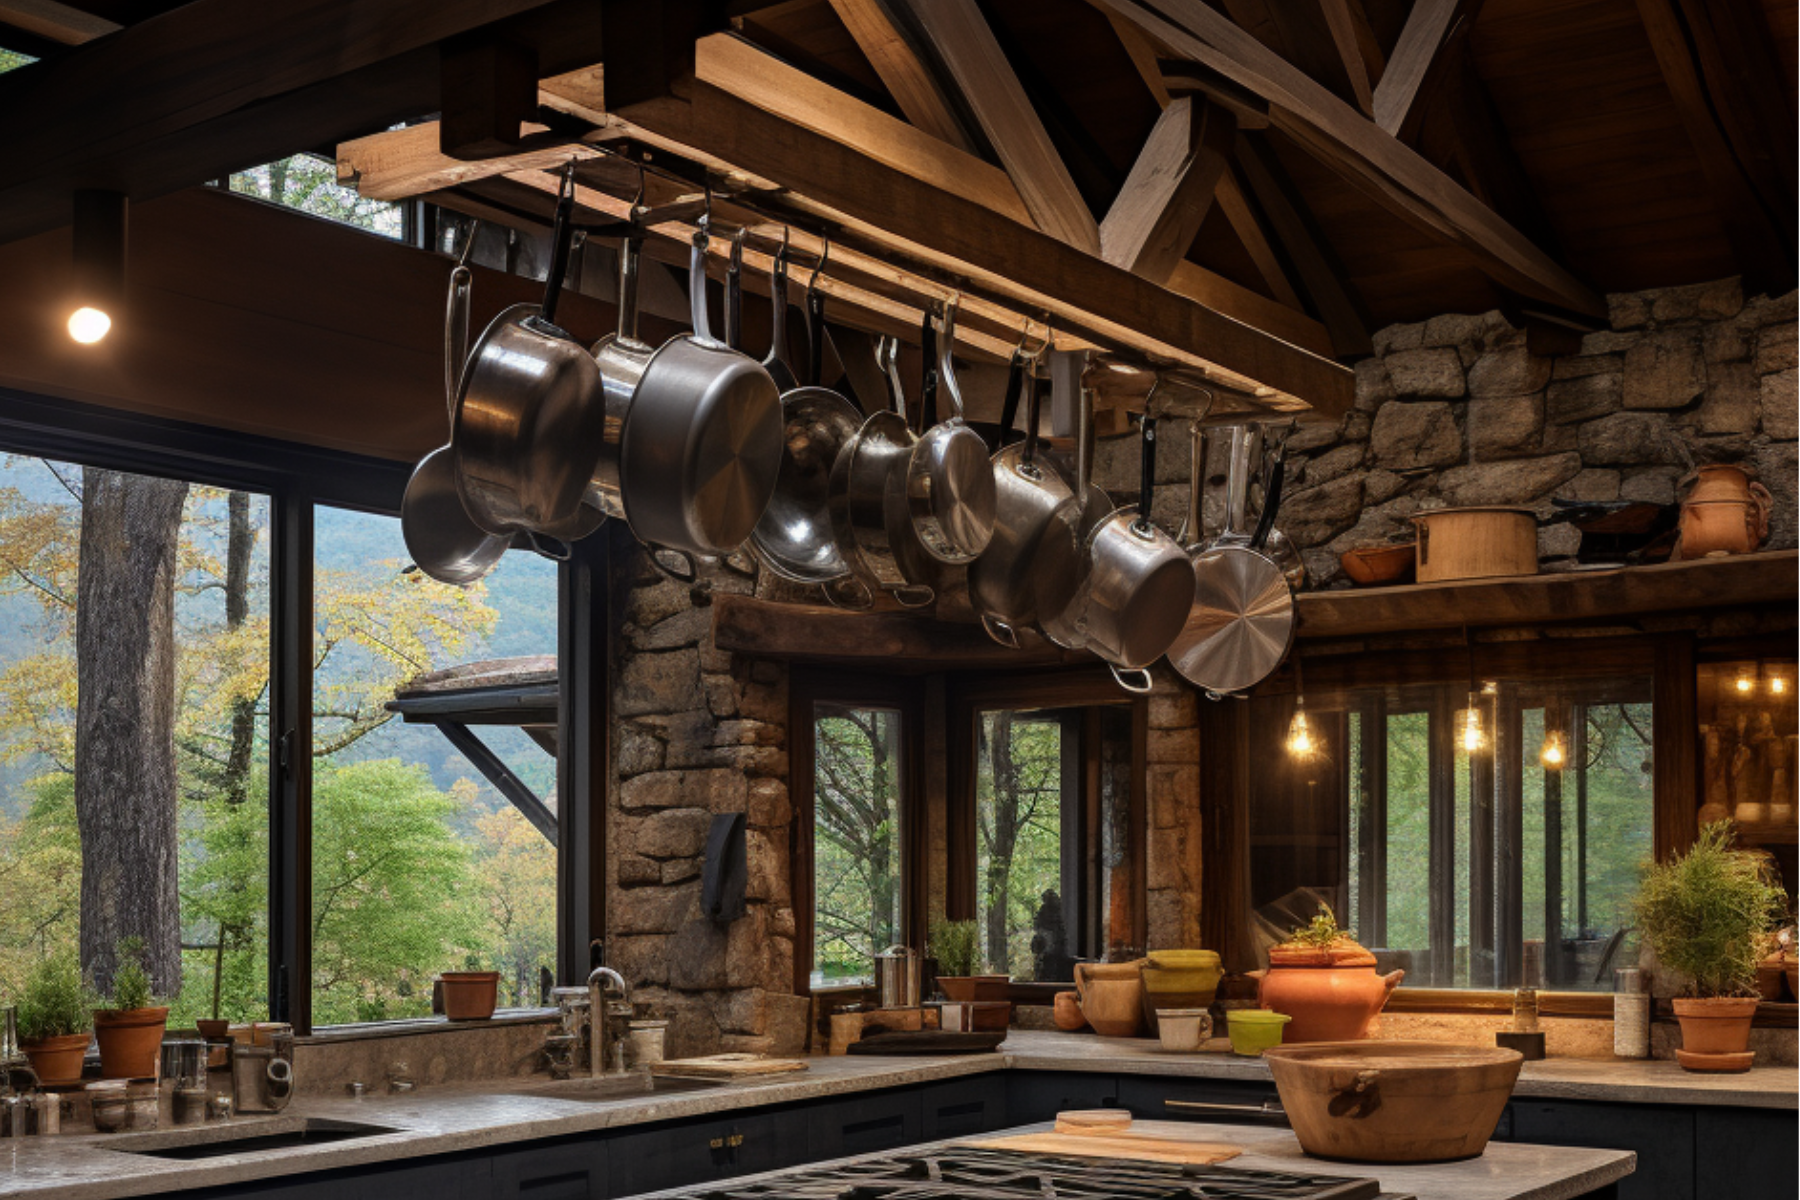 cabin kitchen decor ideas pots and pans